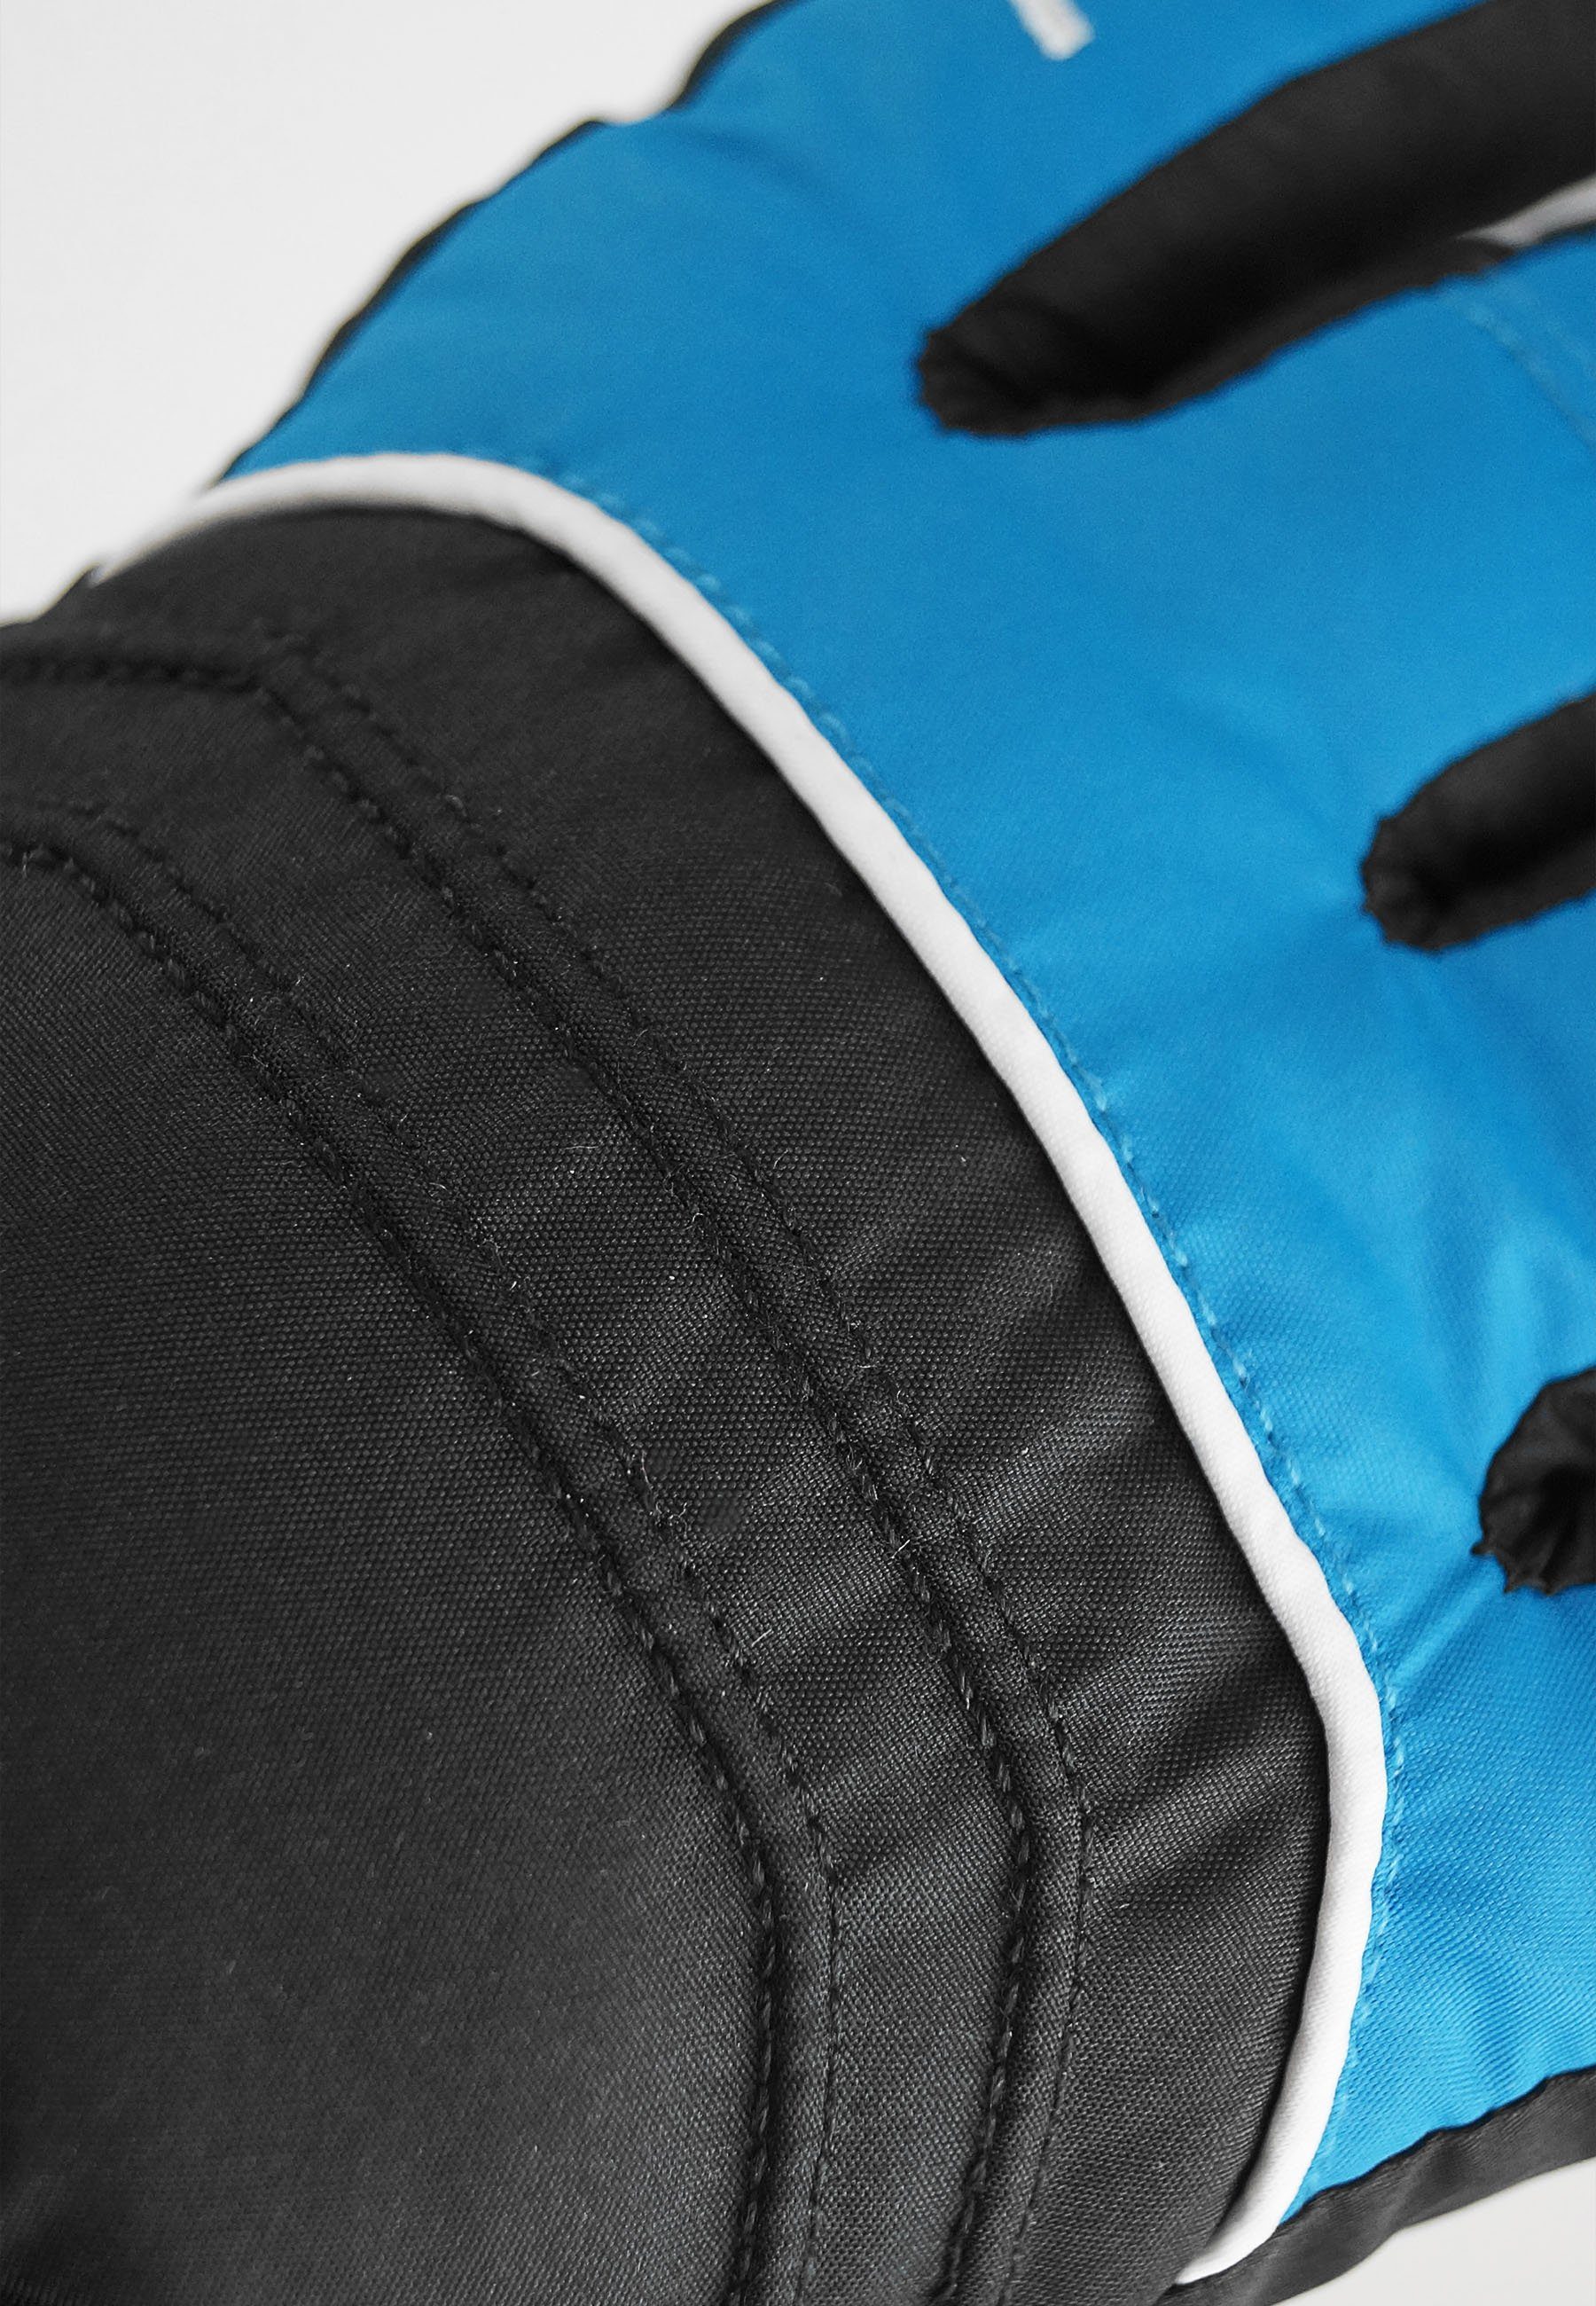 blau-schwarz GORE-TEX Funktionsmembran Teddy Reusch Skihandschuhe mit wasserdichter